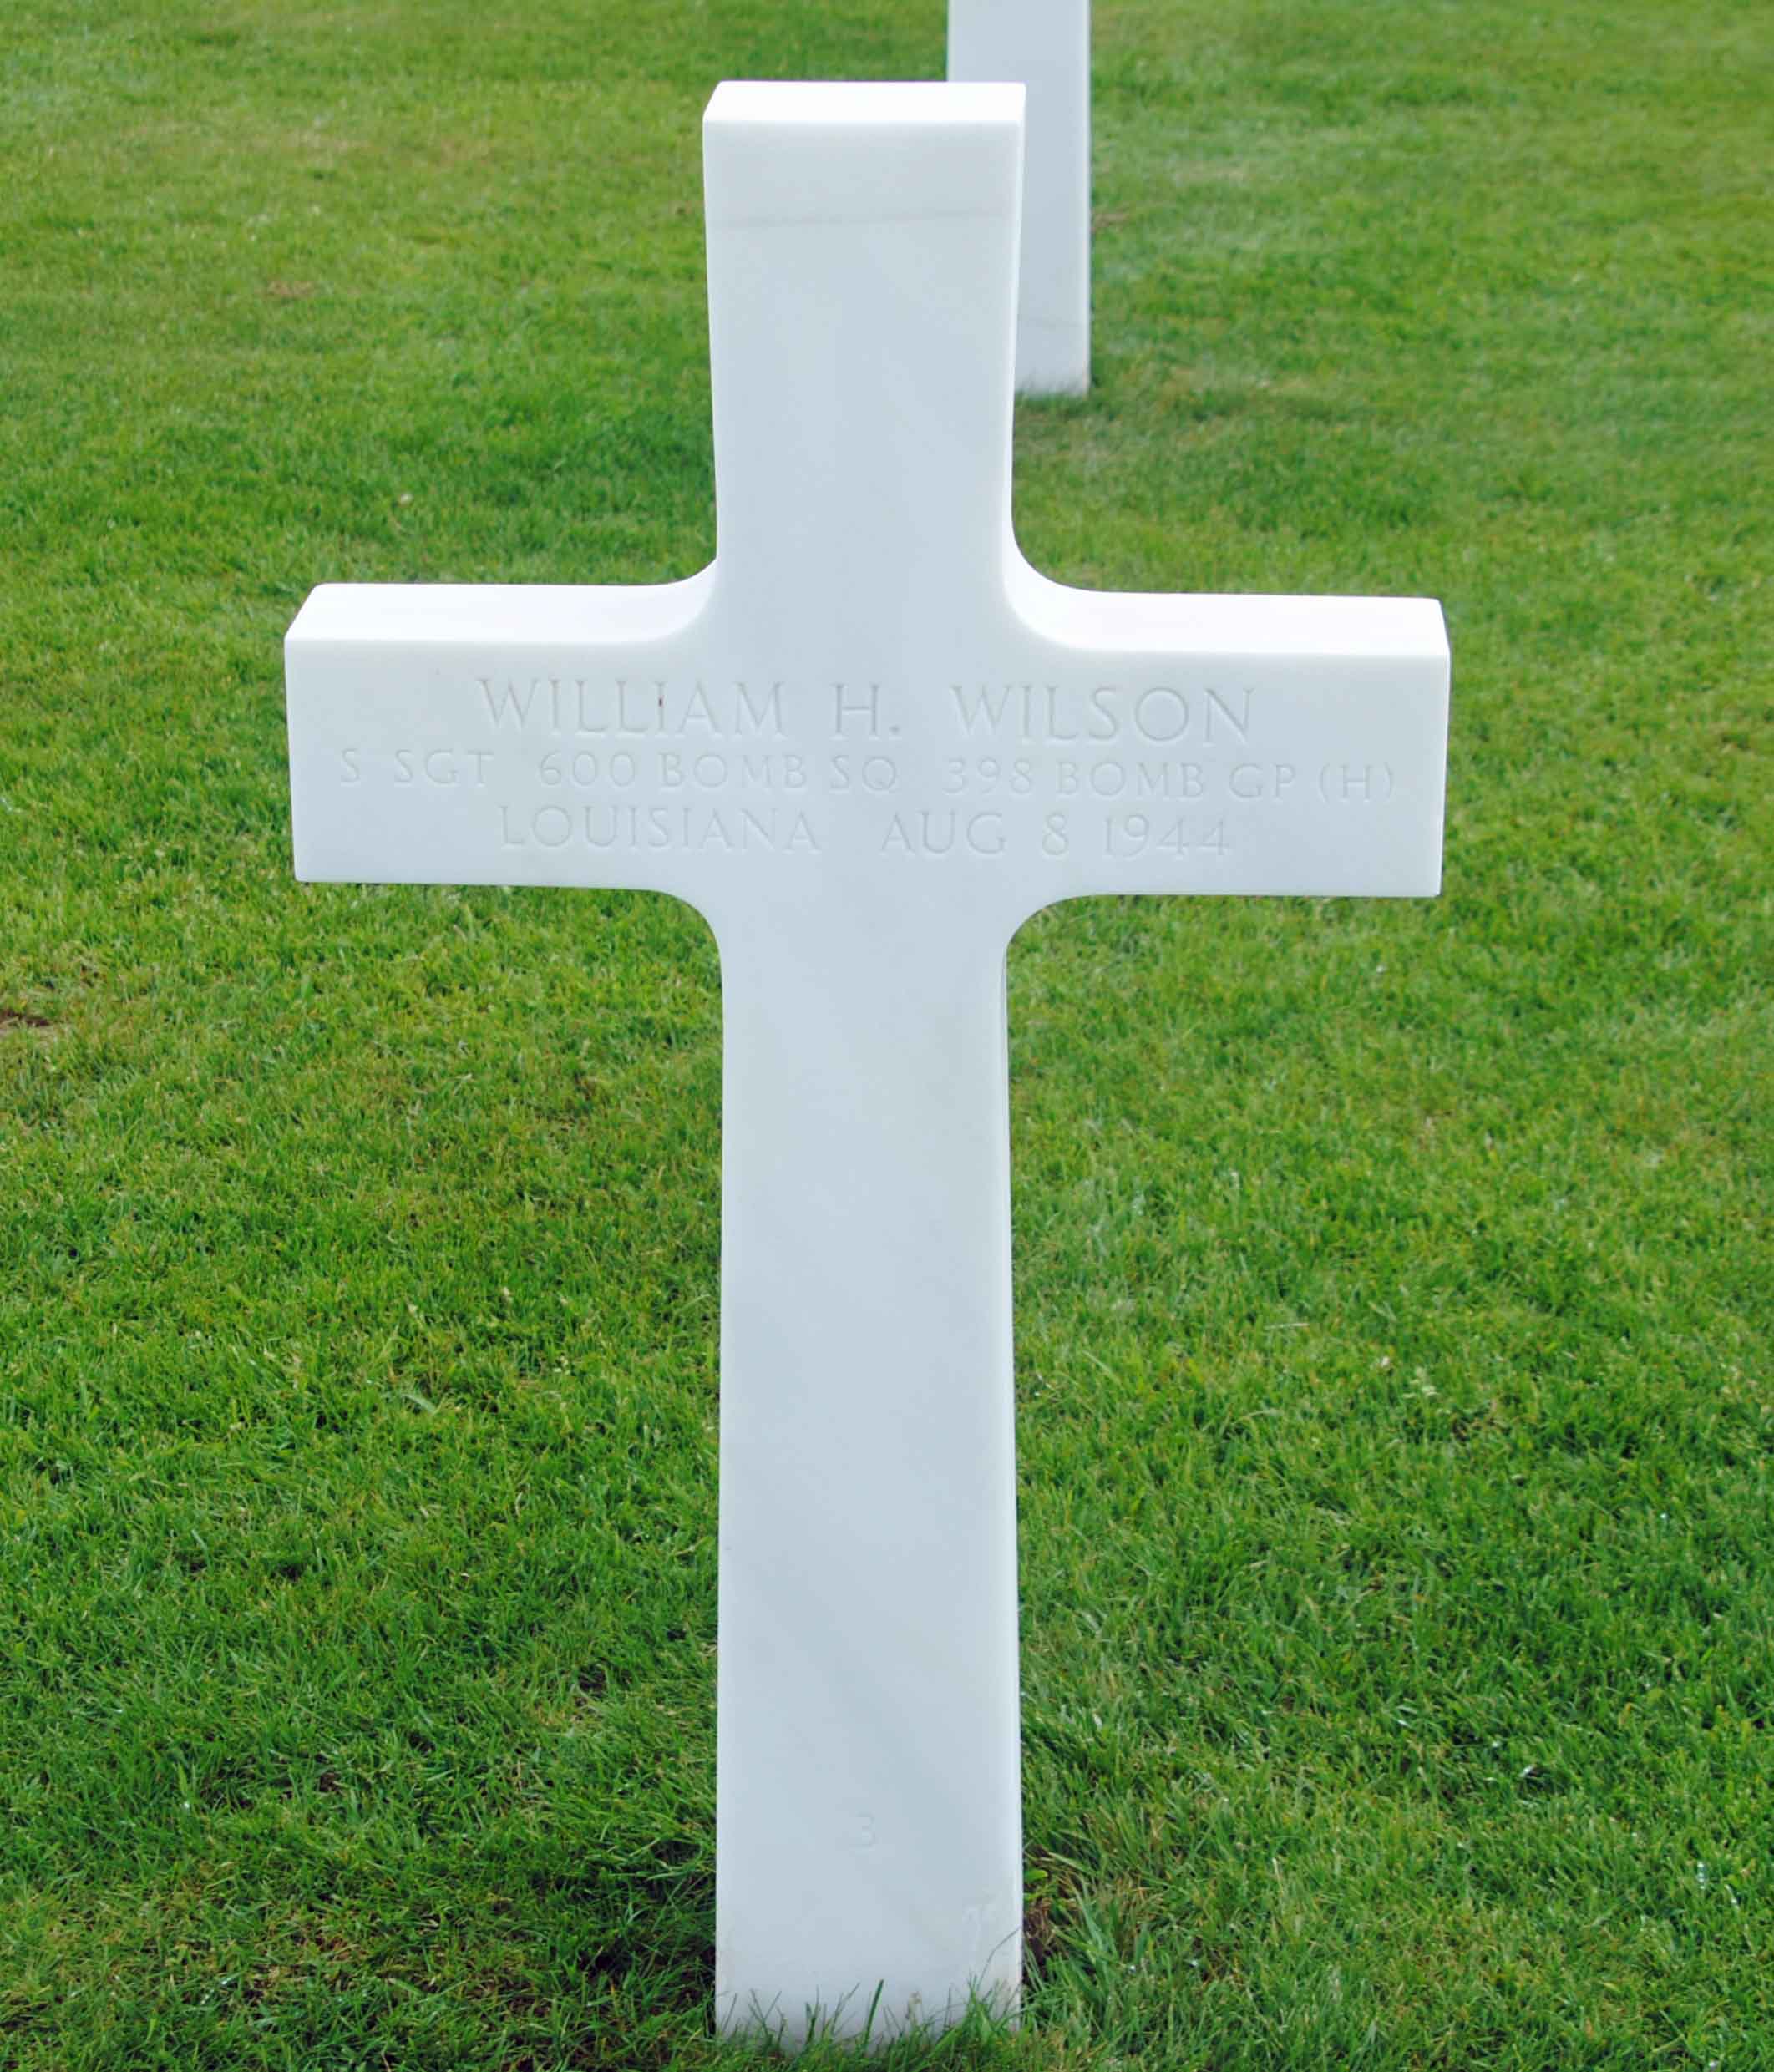 William H. Wilson Grave Marker